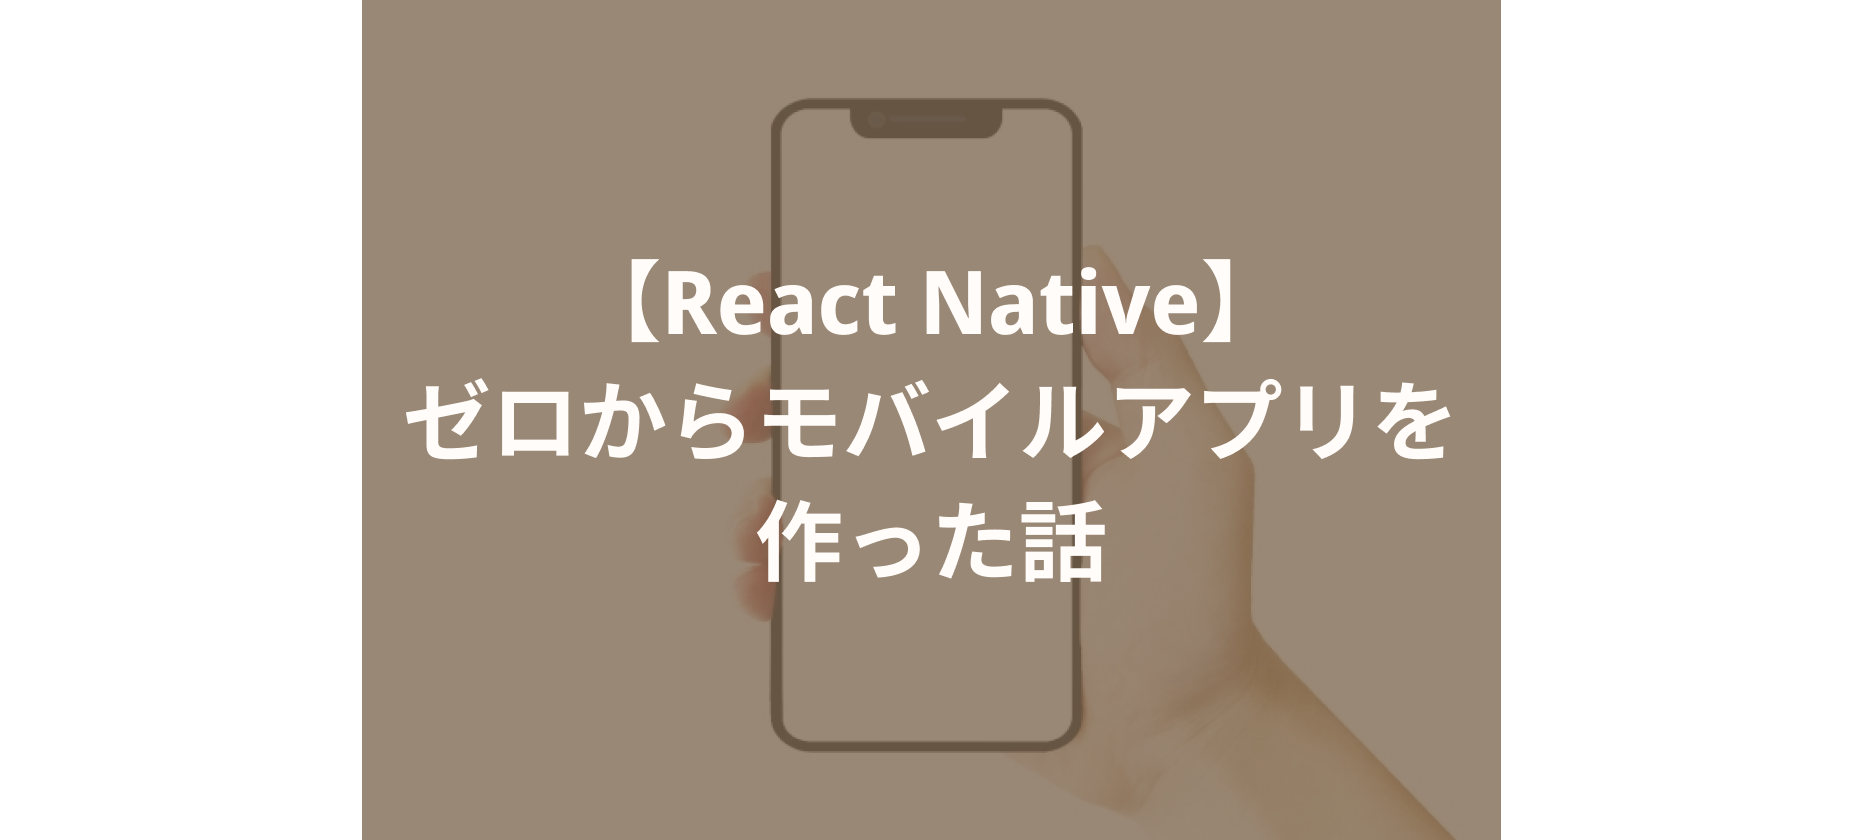 【React Native】ゼロからモバイルアプリを作った話